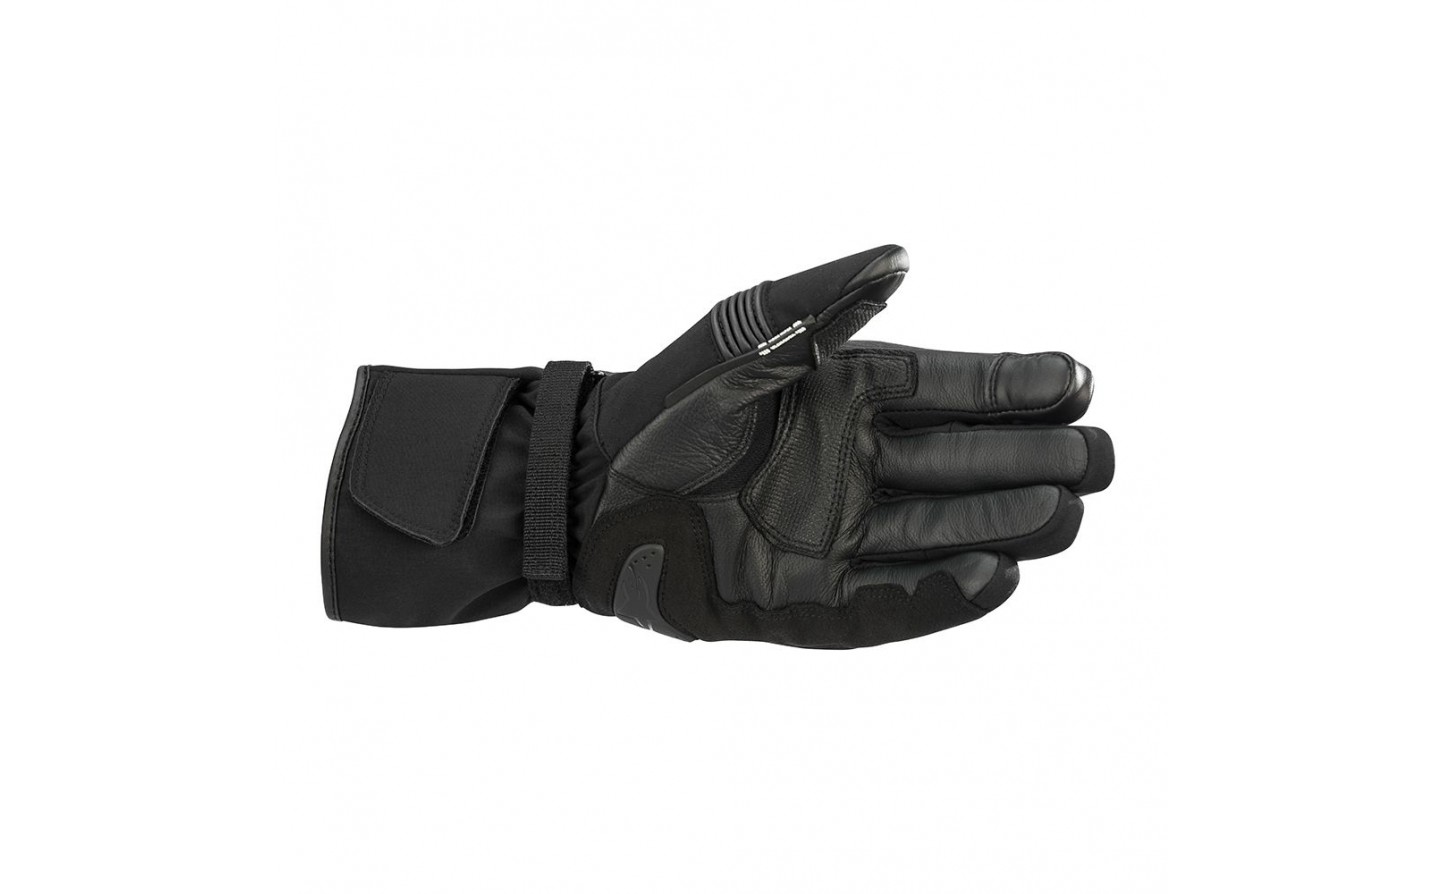 Test: Probamos los guantes Alpinestars V2: ajuste y agarre al manillar para  enduro